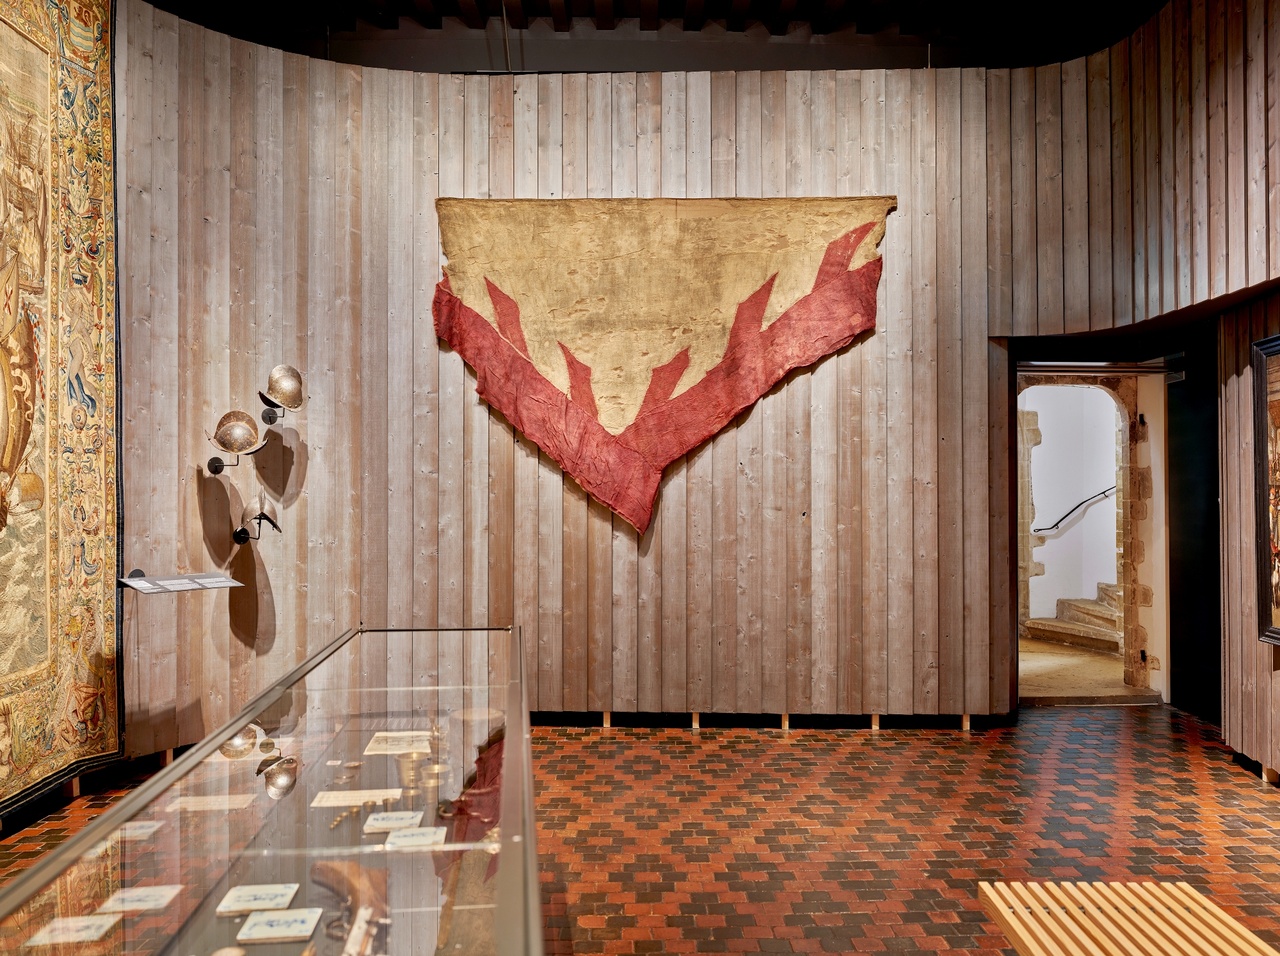 Fragment van een Spaanse scheepsvlag (uit de Tachtigjarige Oorlog) van het Rijksmuseum hangt (tijdelijk) in de Wandtapijtenzaal